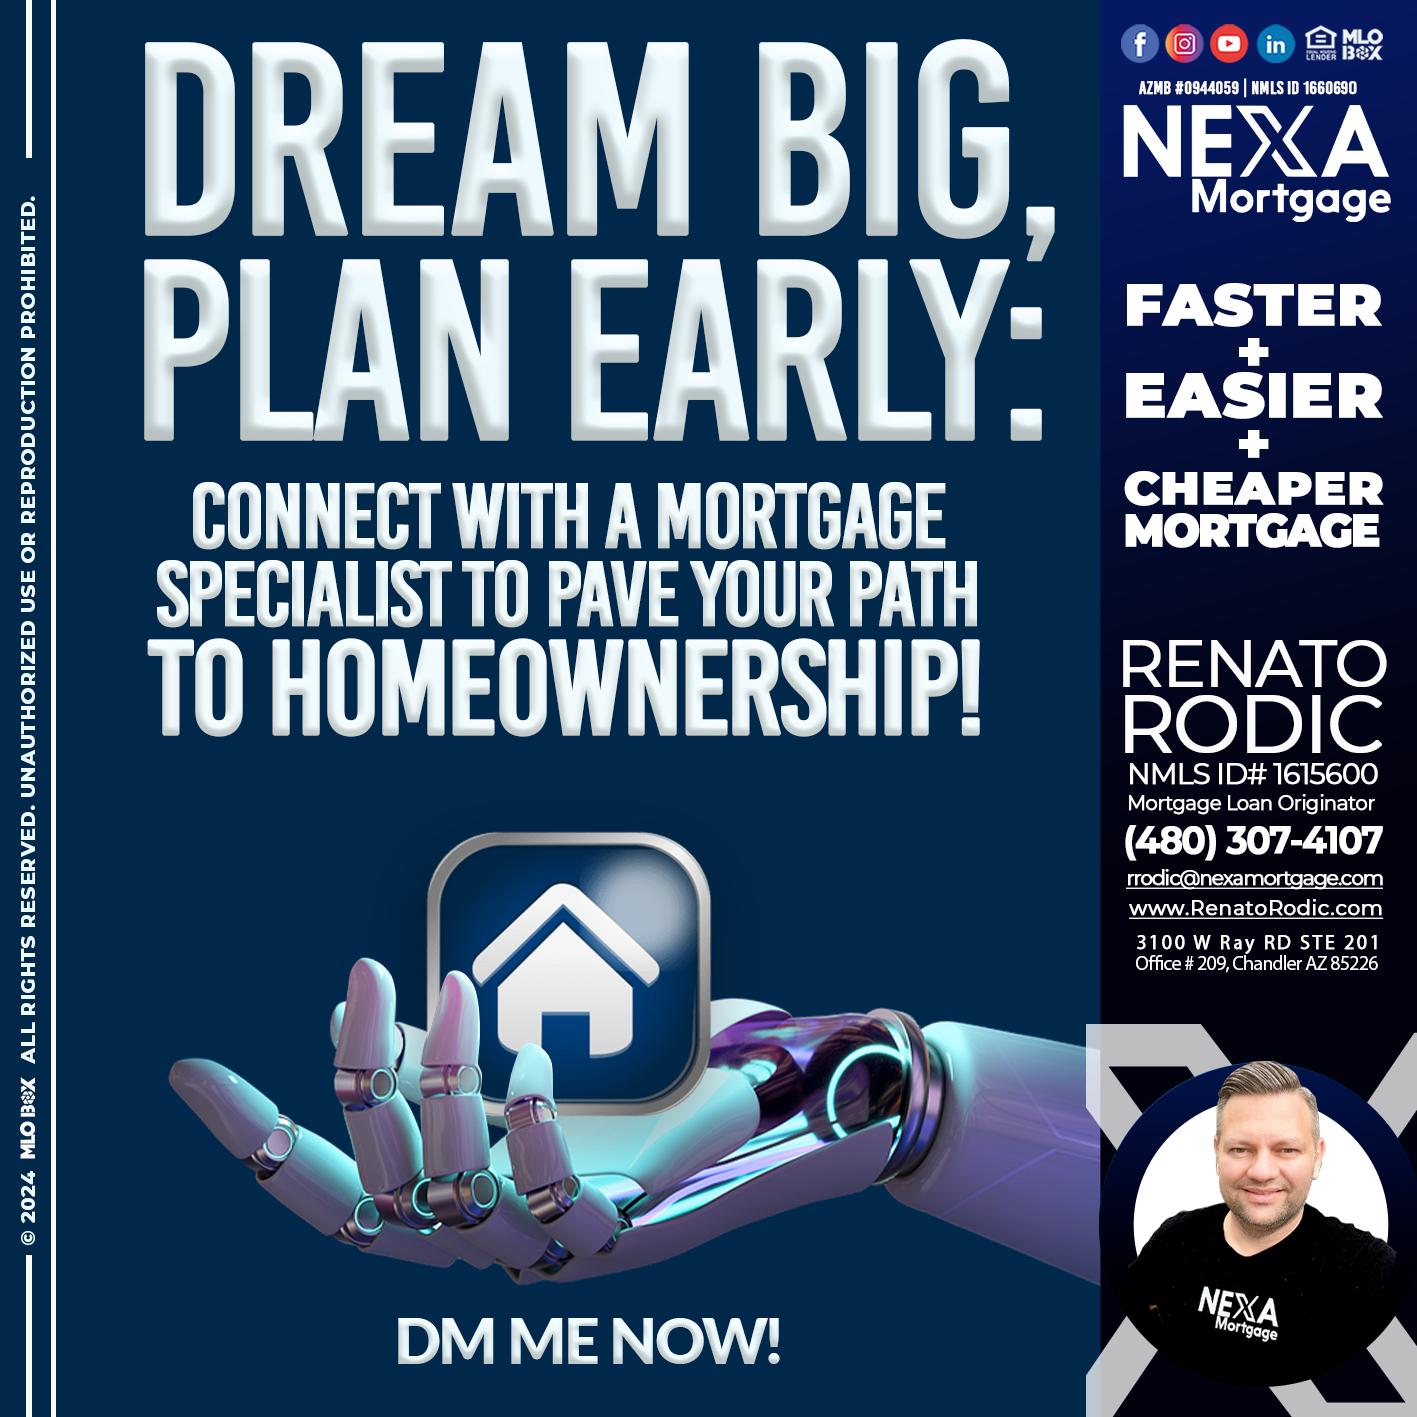 DREAM BIG - Renato Rodic -Mortgage Loan Originator